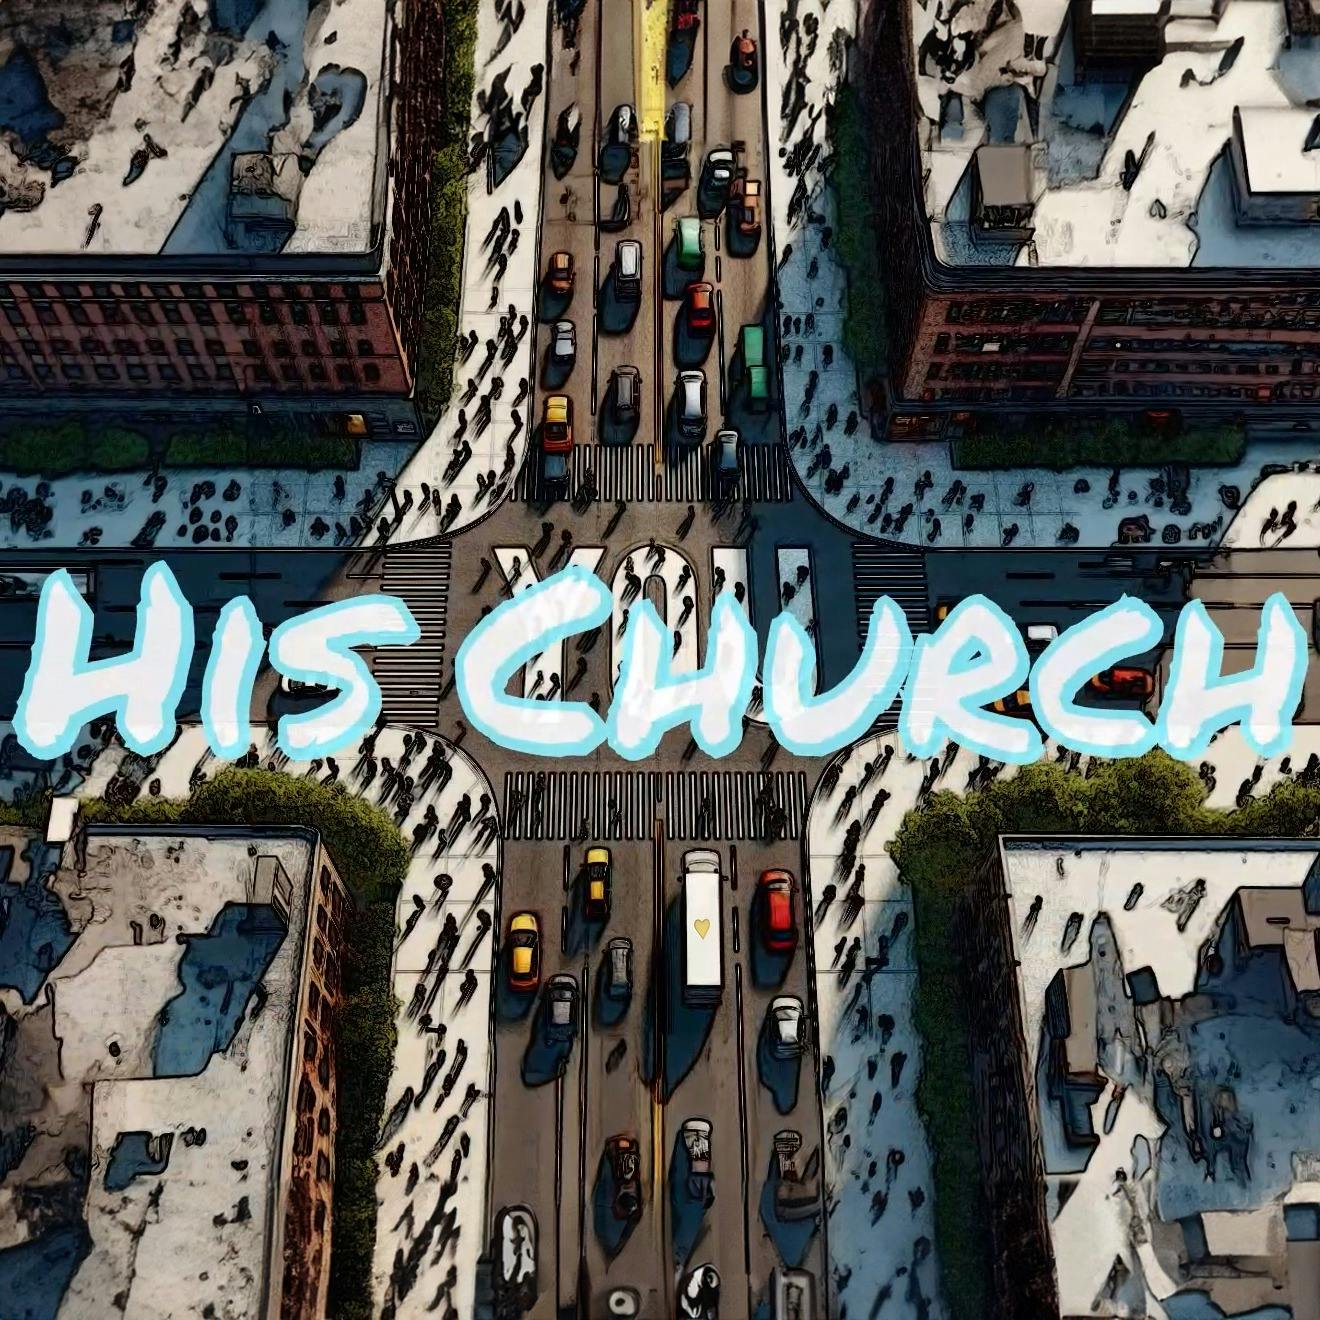 His Church